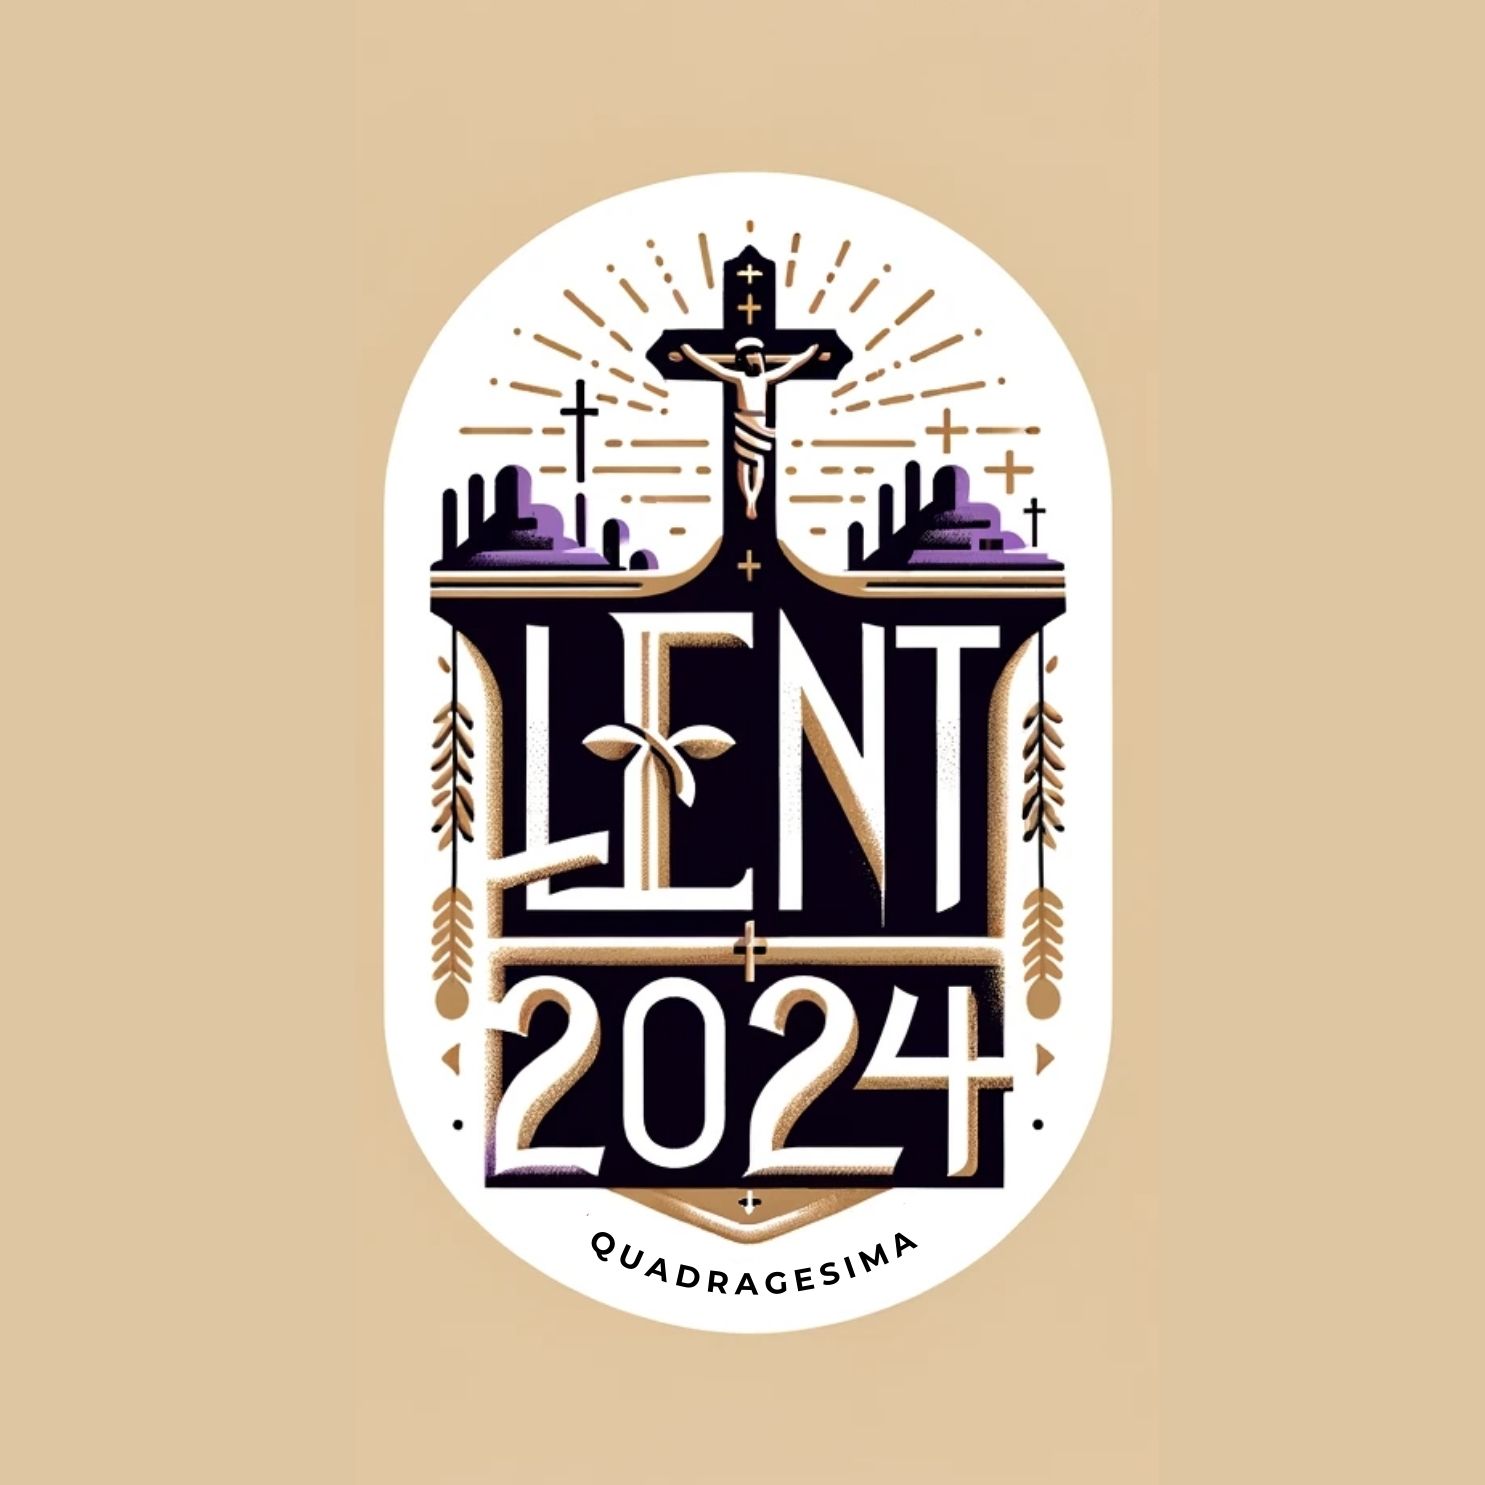 Lent 2024 